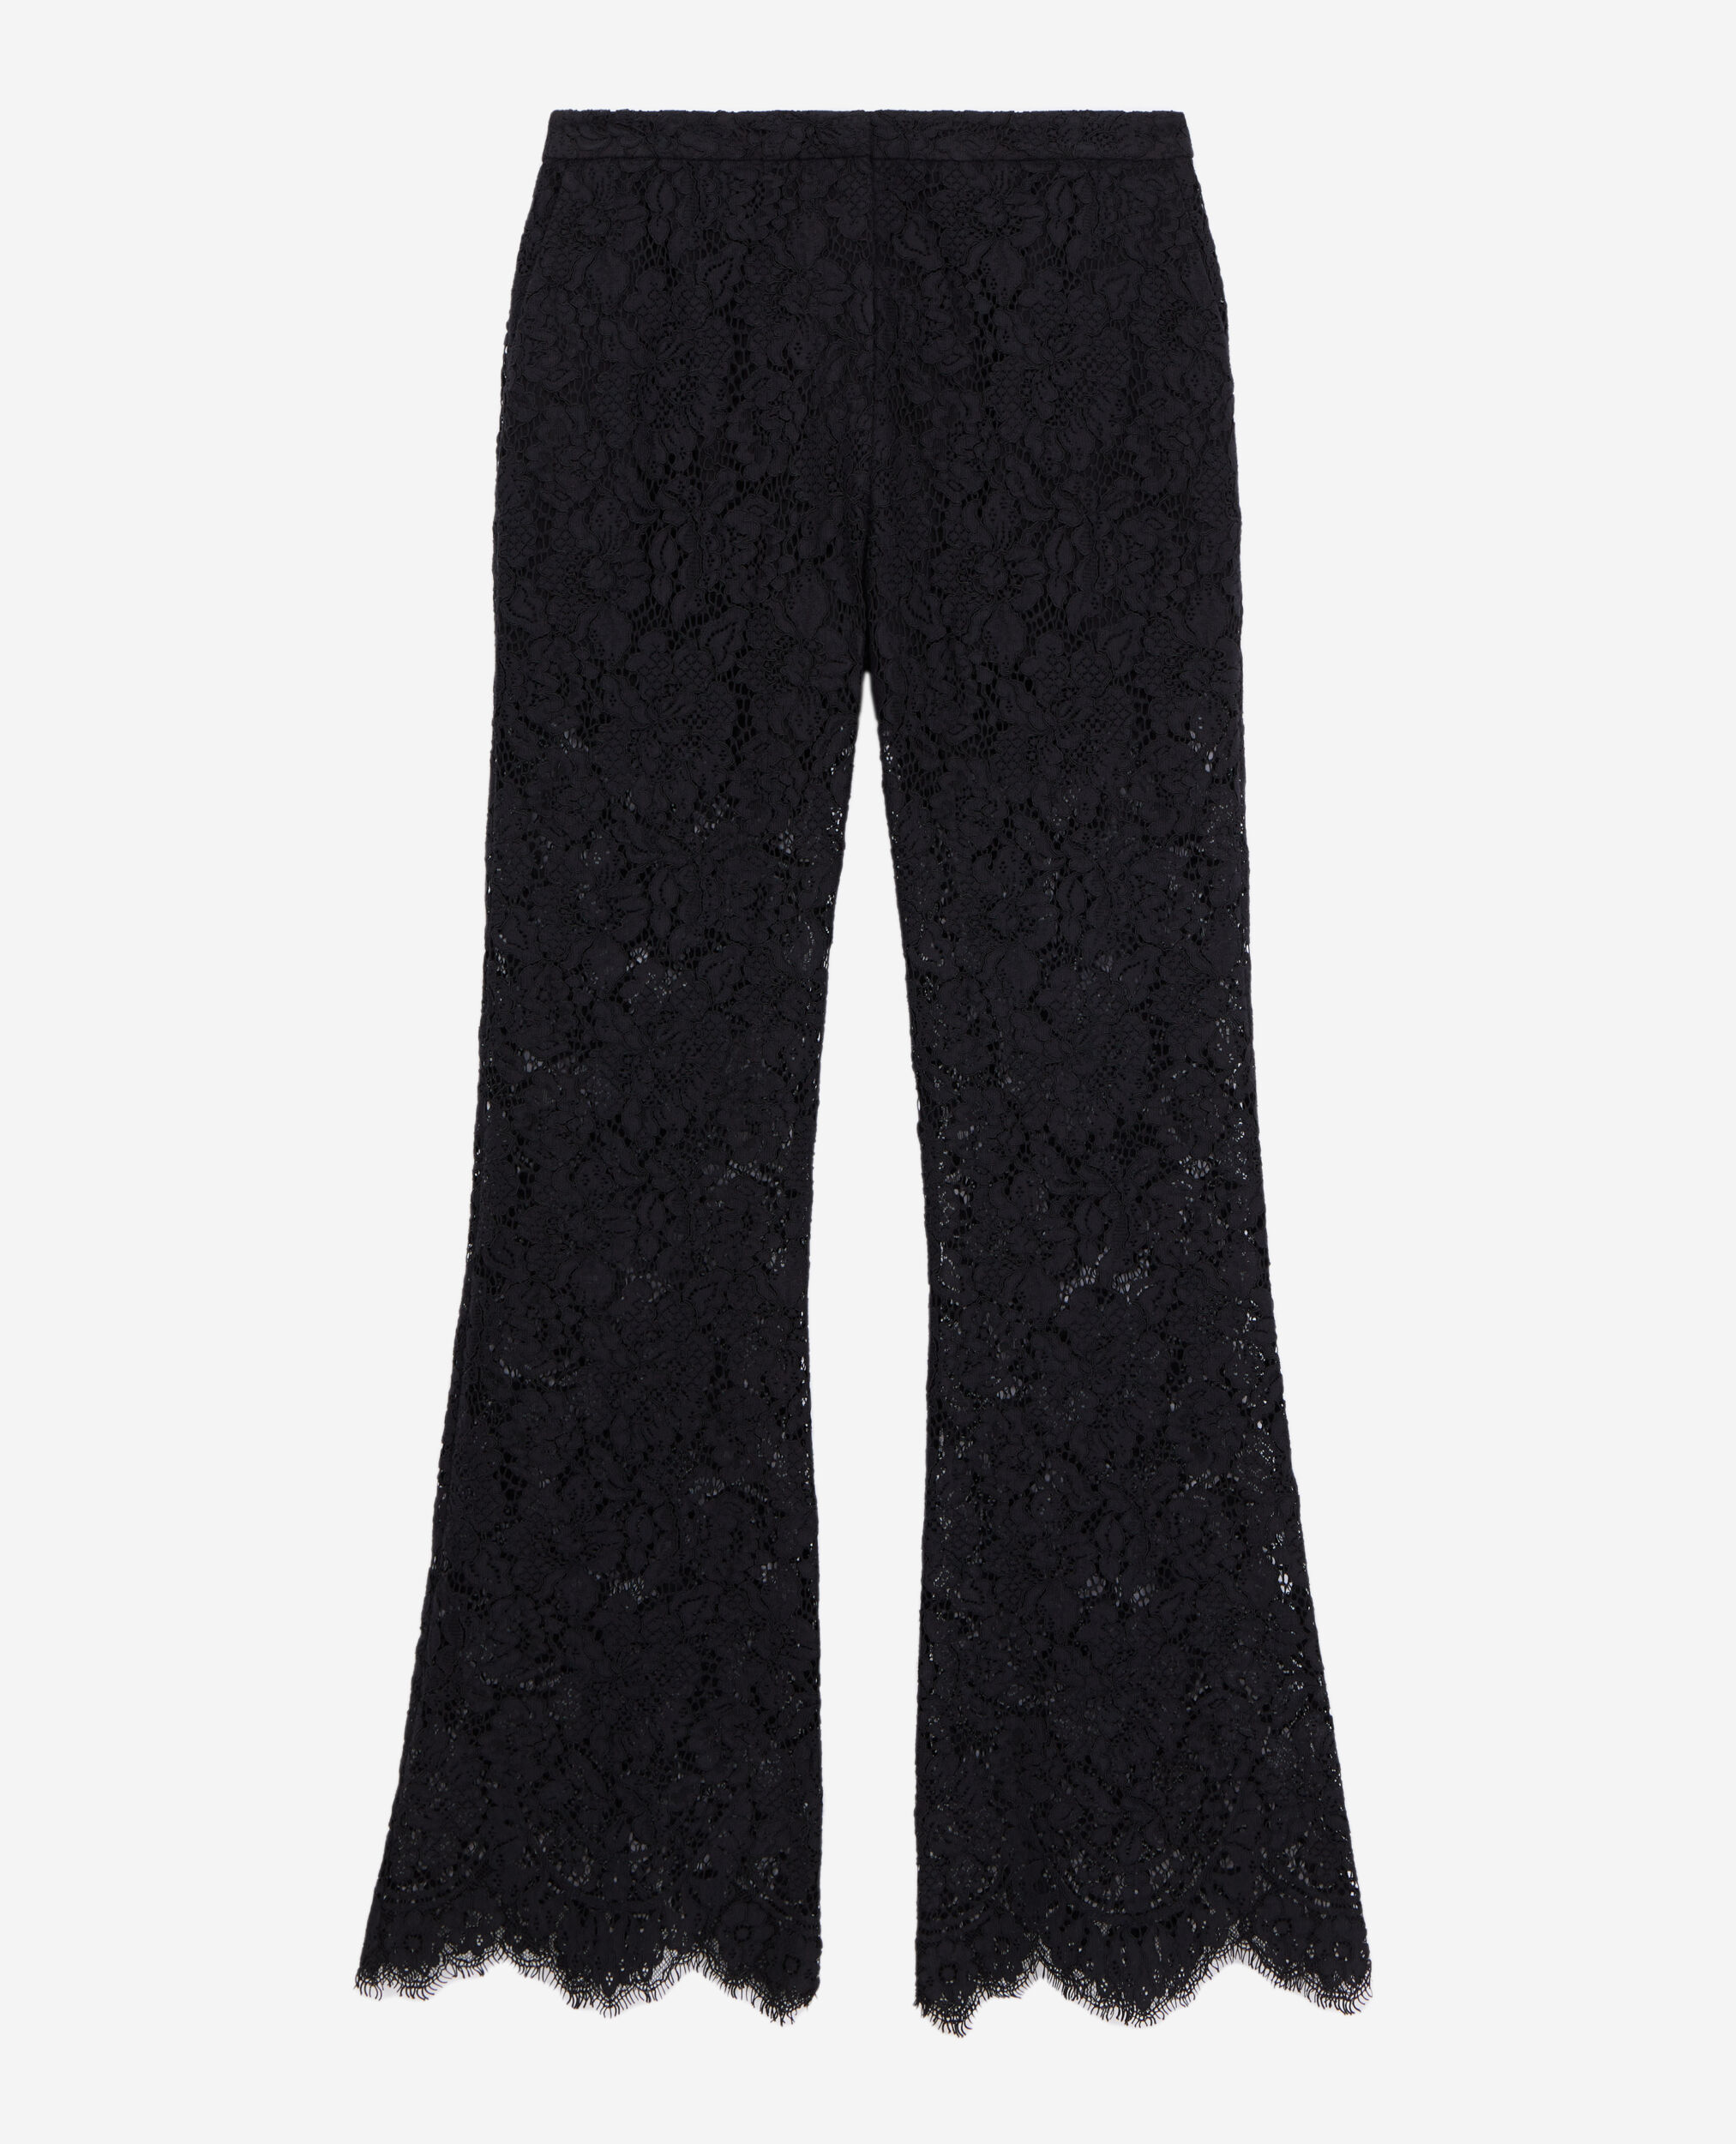 Women's New Black Lace Stitching High Waist Loose Fishtail Pants